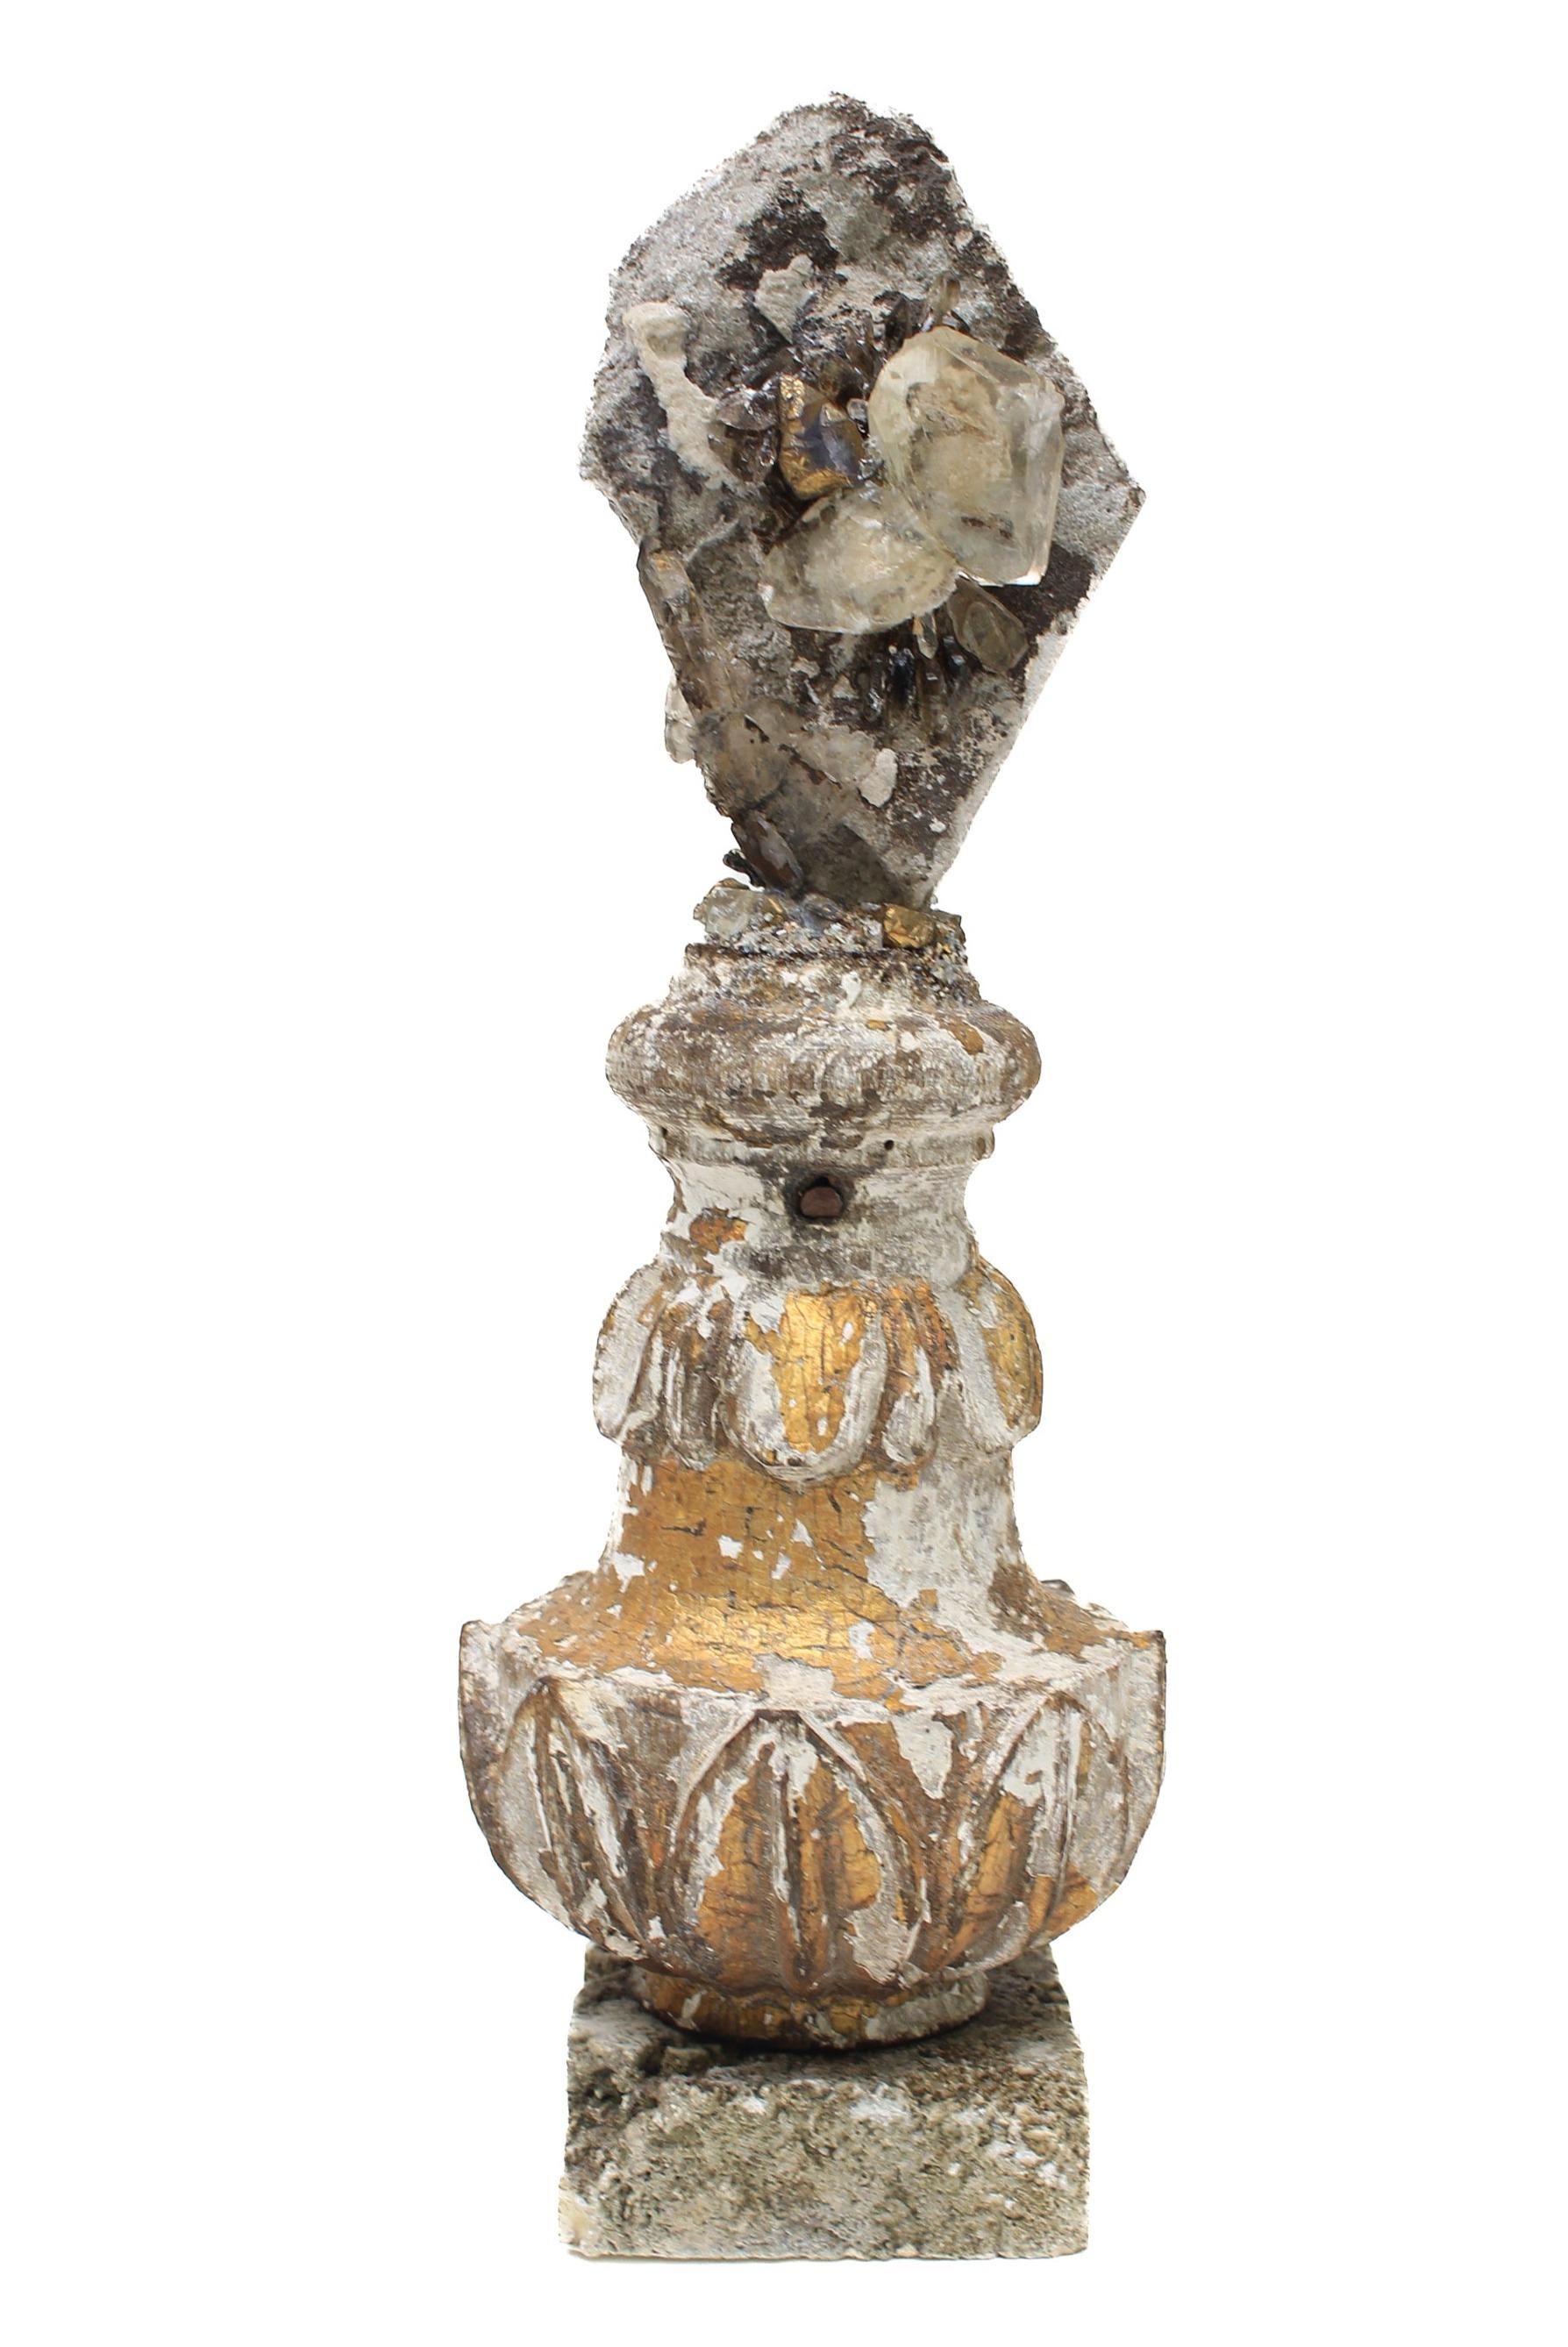 Fragment de feuille d'or italien du 17ème siècle avec des cristaux de calcite dans une matrice rocheuse avec des cristaux de quartz en feuille d'or et monté sur une base de corail de roche.

Ce fragment faisait à l'origine partie d'un chandelier